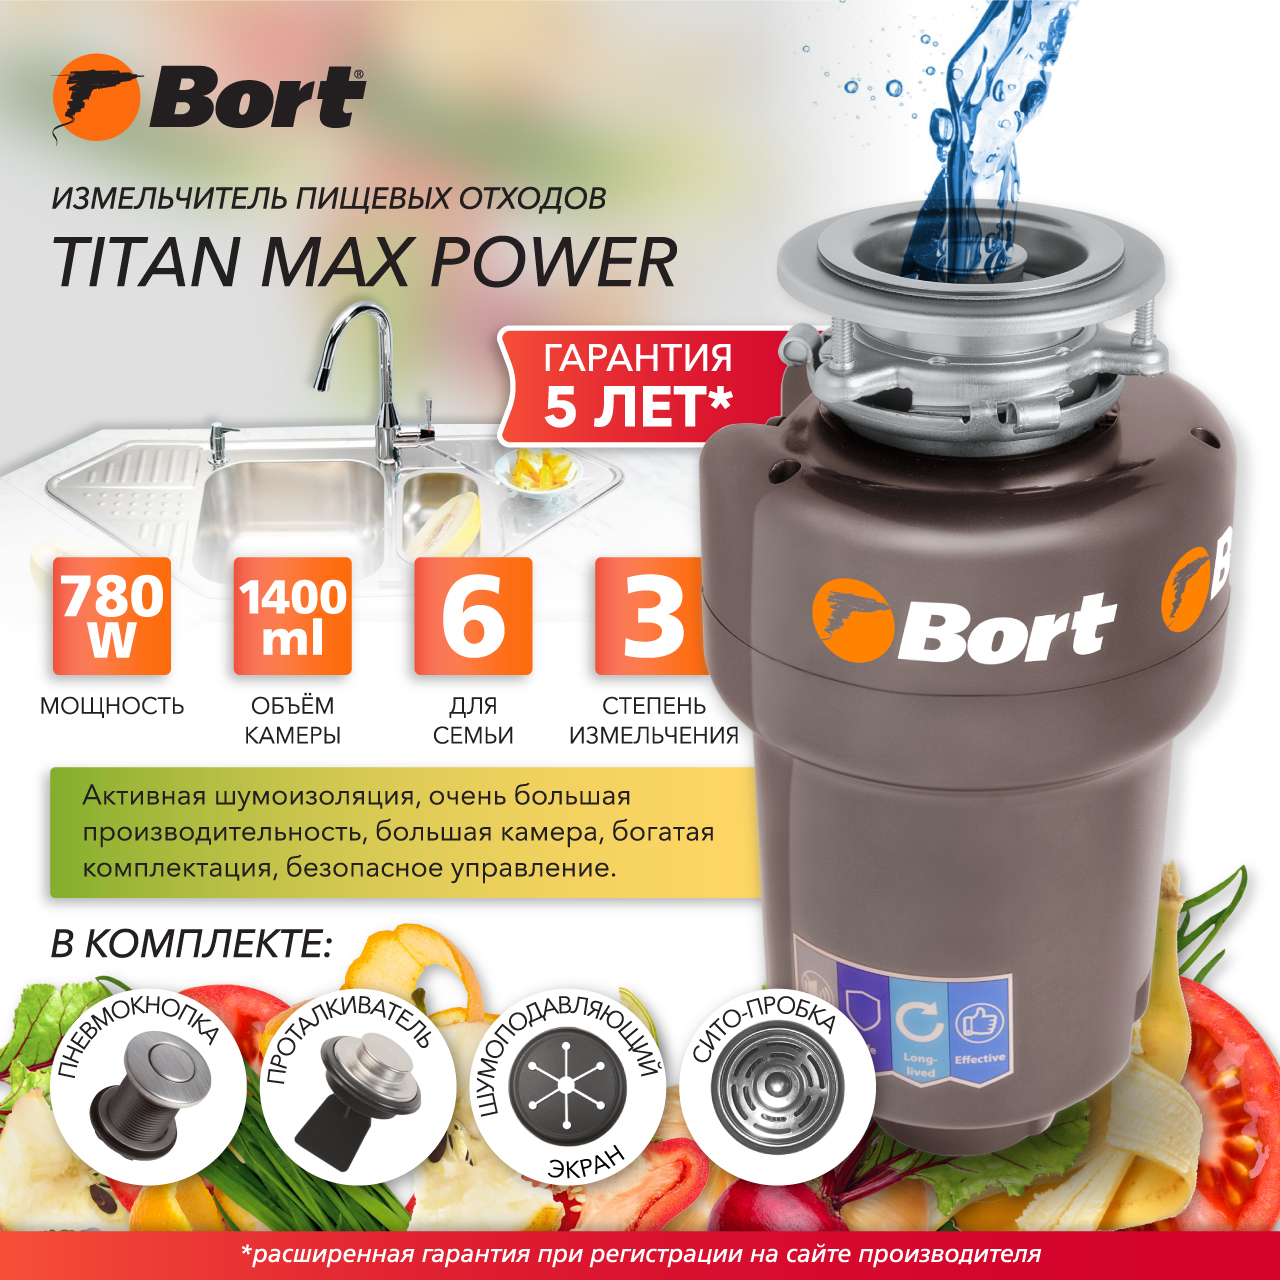 Измельчитель пищевых отходов Bort TITAN MAX POWER (91275790) серебристый электрический краскораспылитель bort